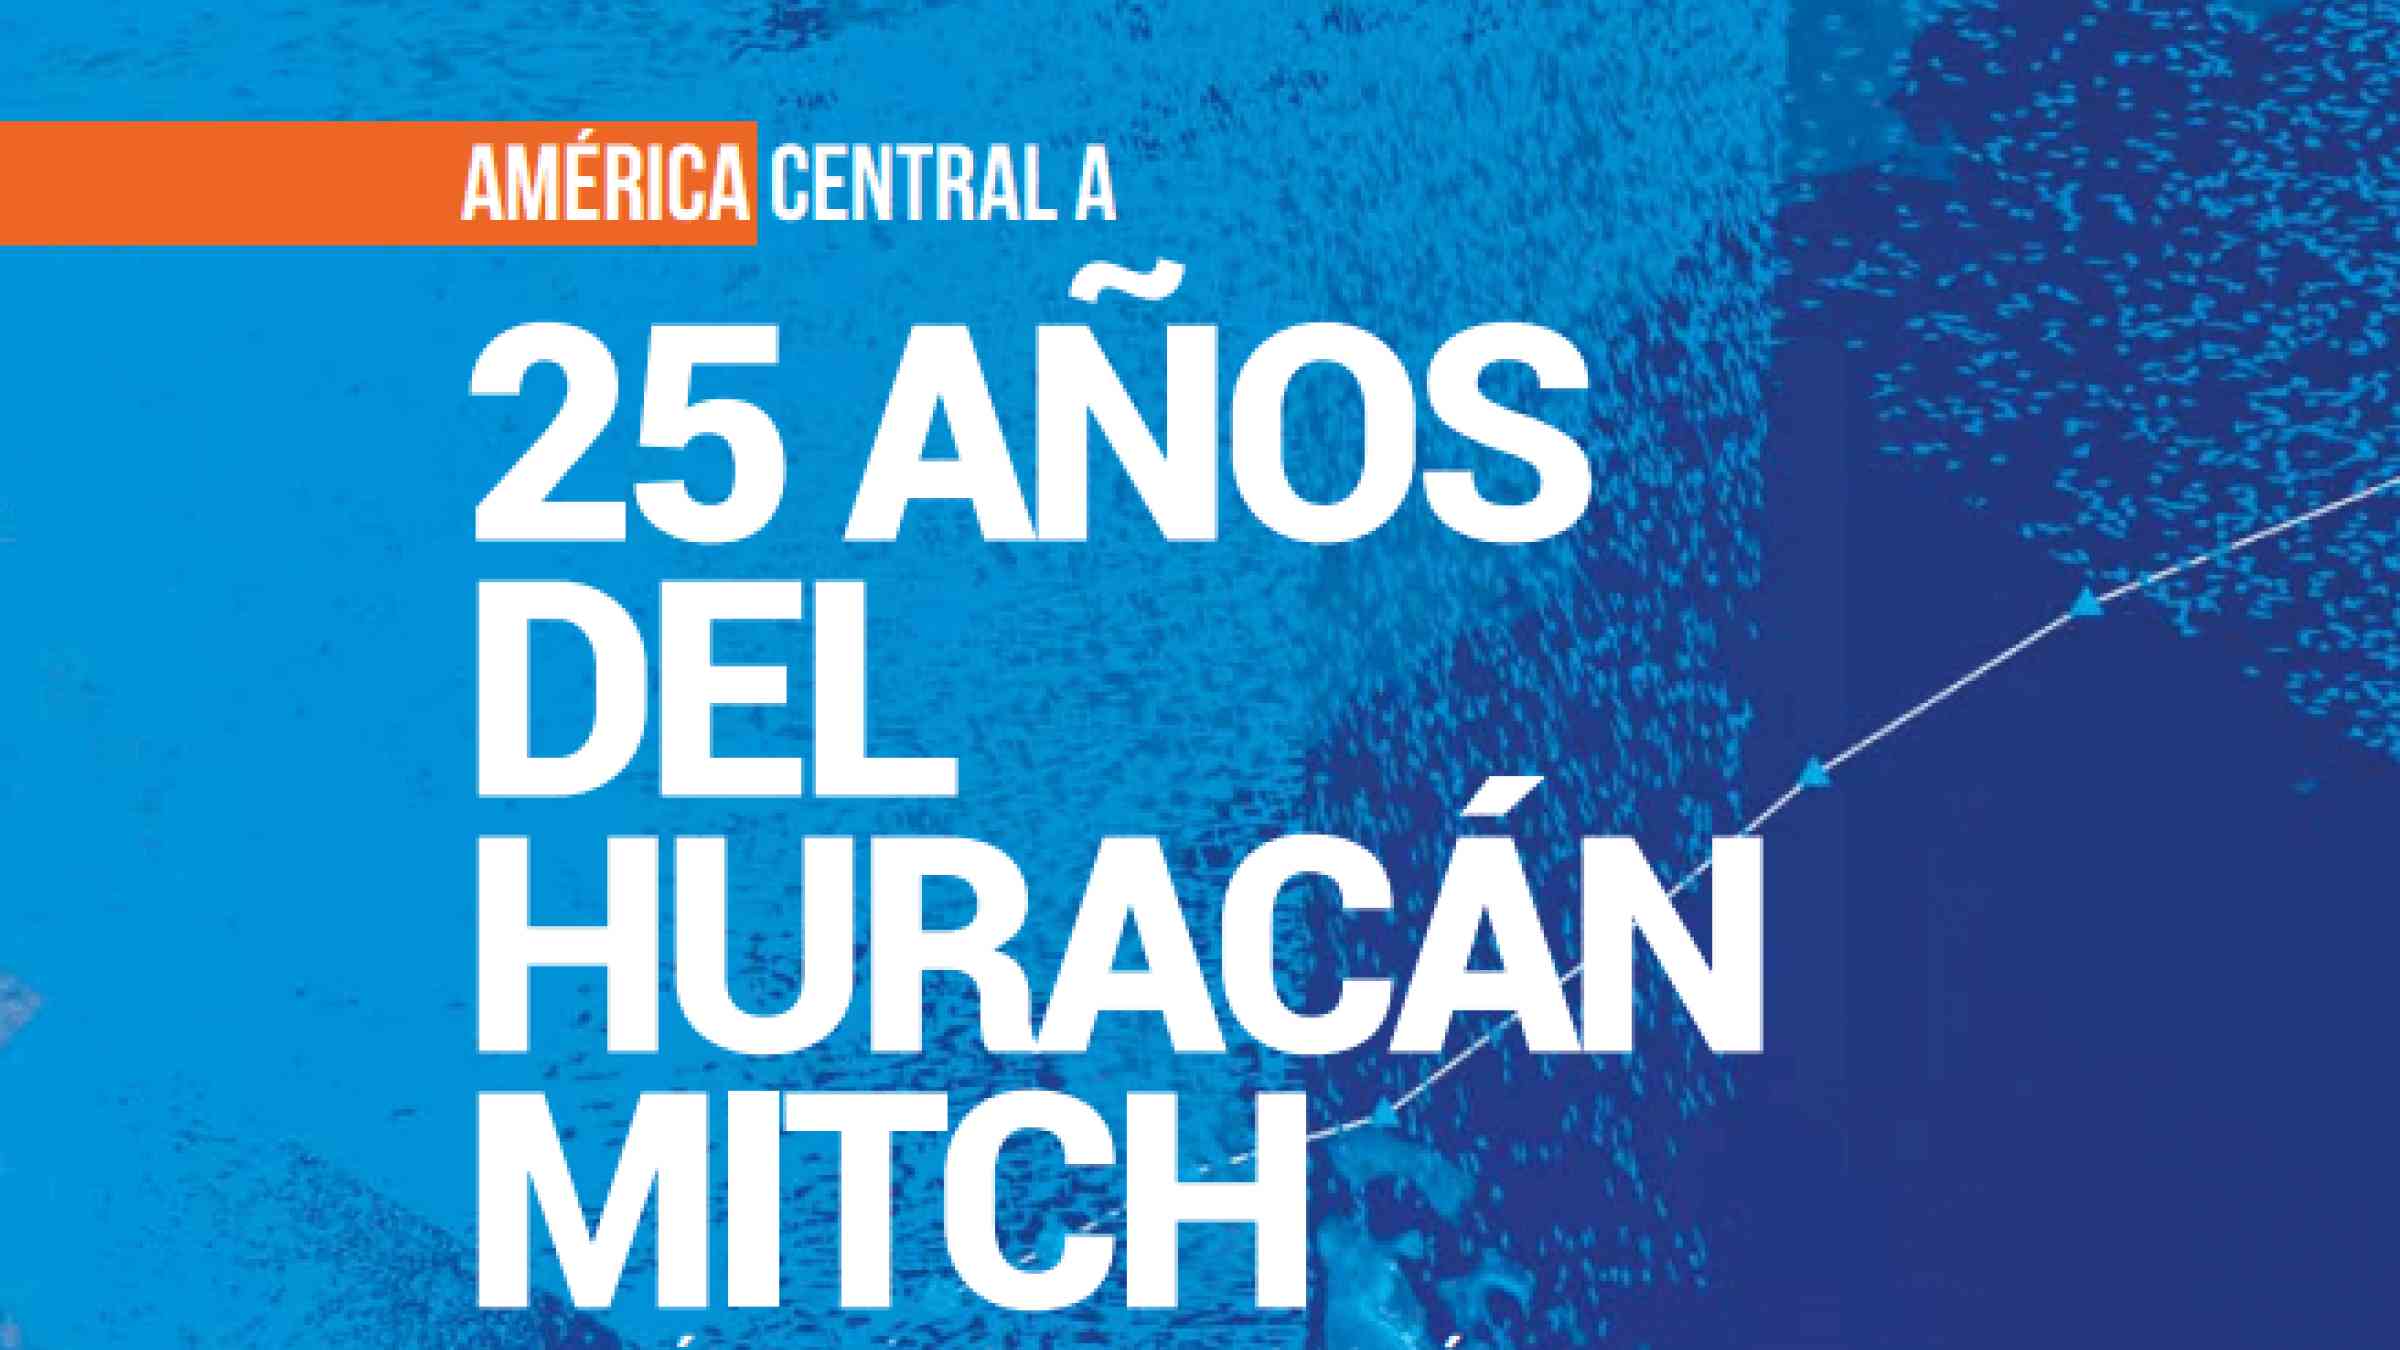 América Central a 25 años del huracán Mitch